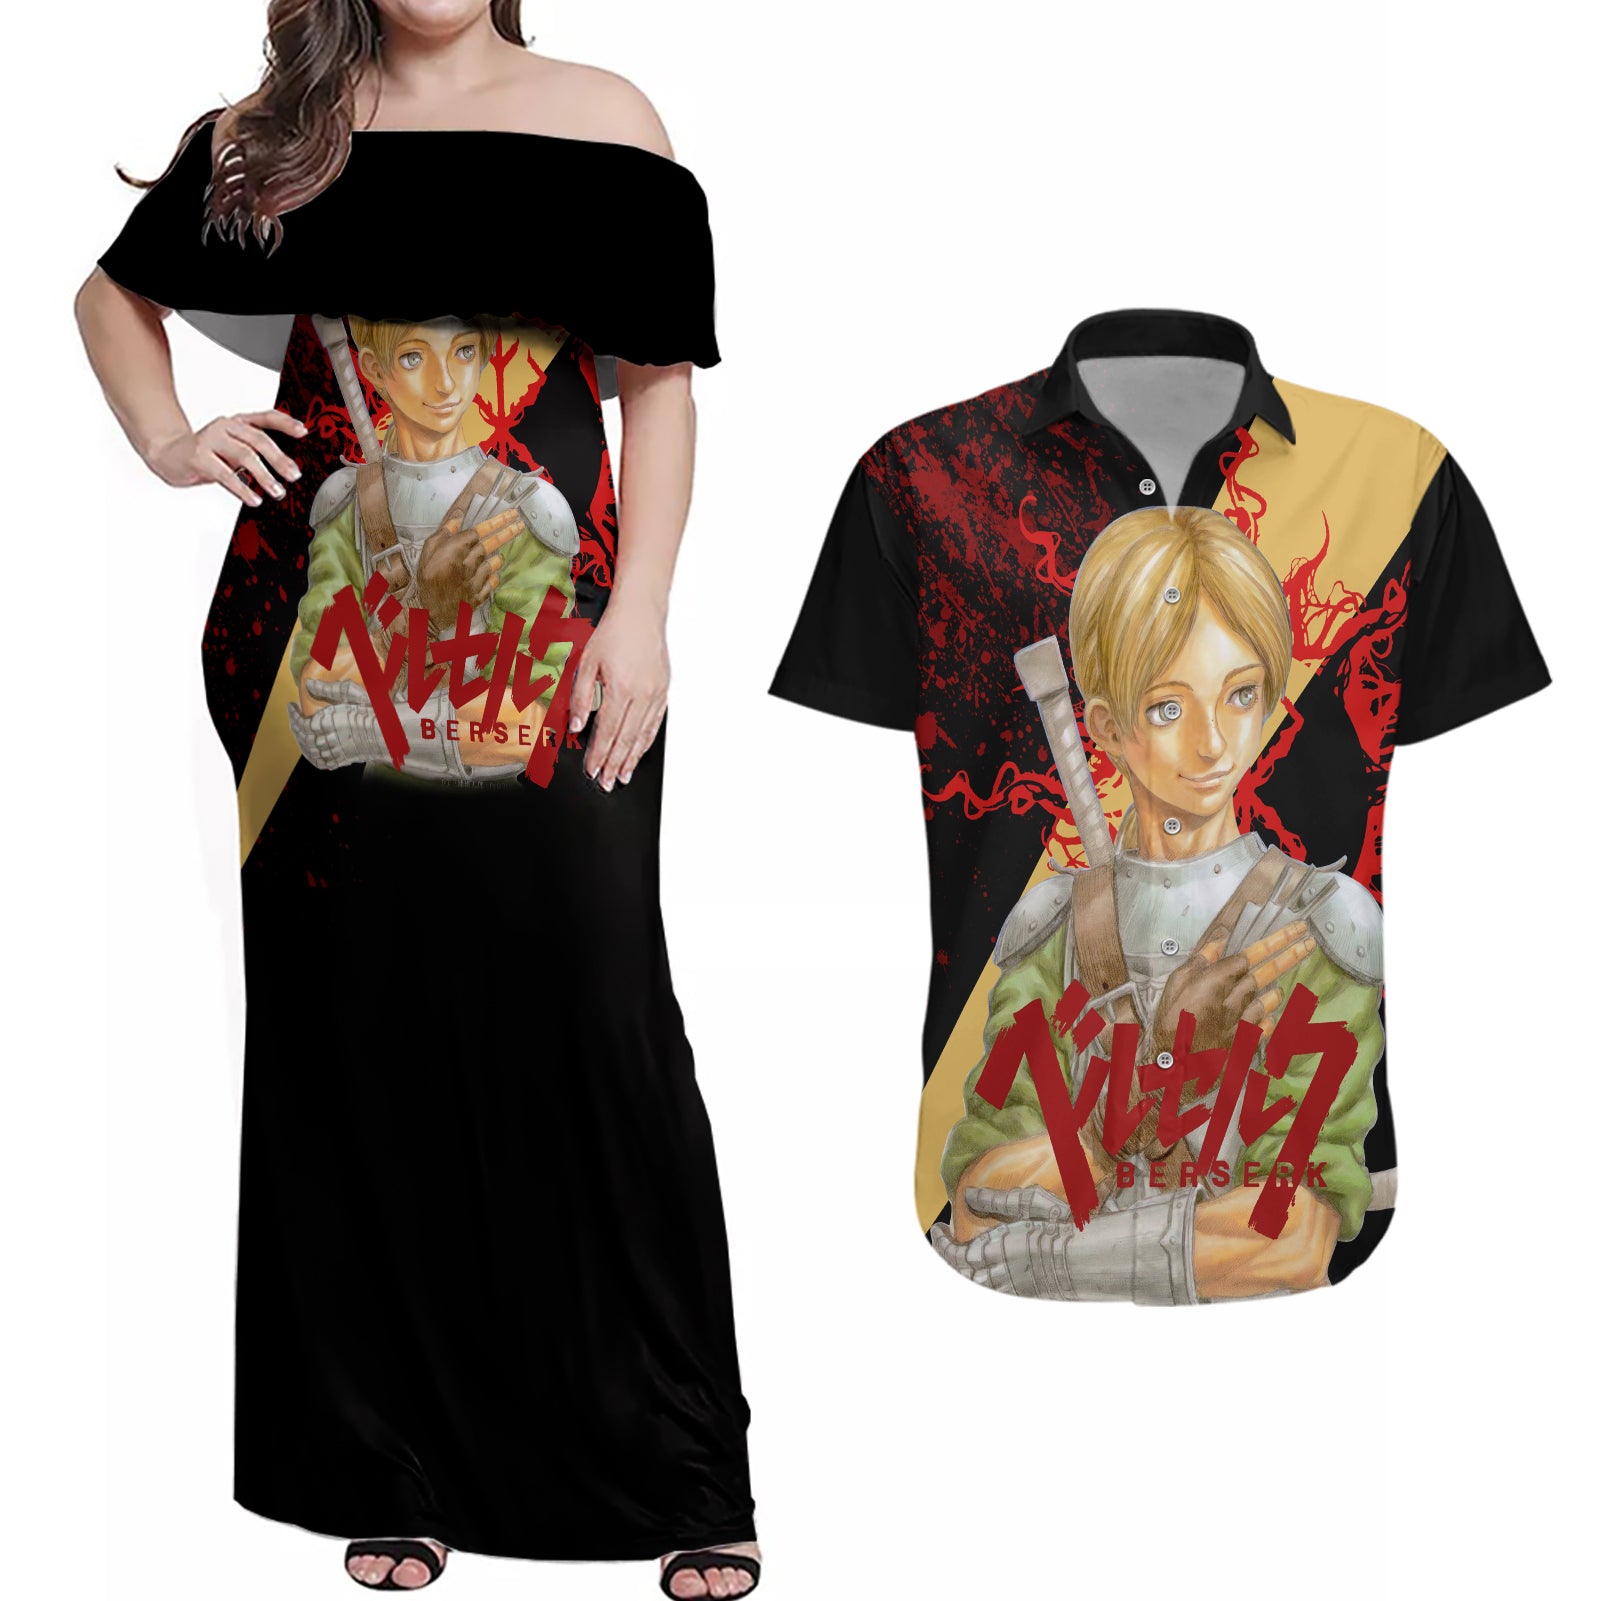 Judeau Berserk Couples Matching Off Shoulder Maxi Dress and Hawaiian Shirt Black Blood Style